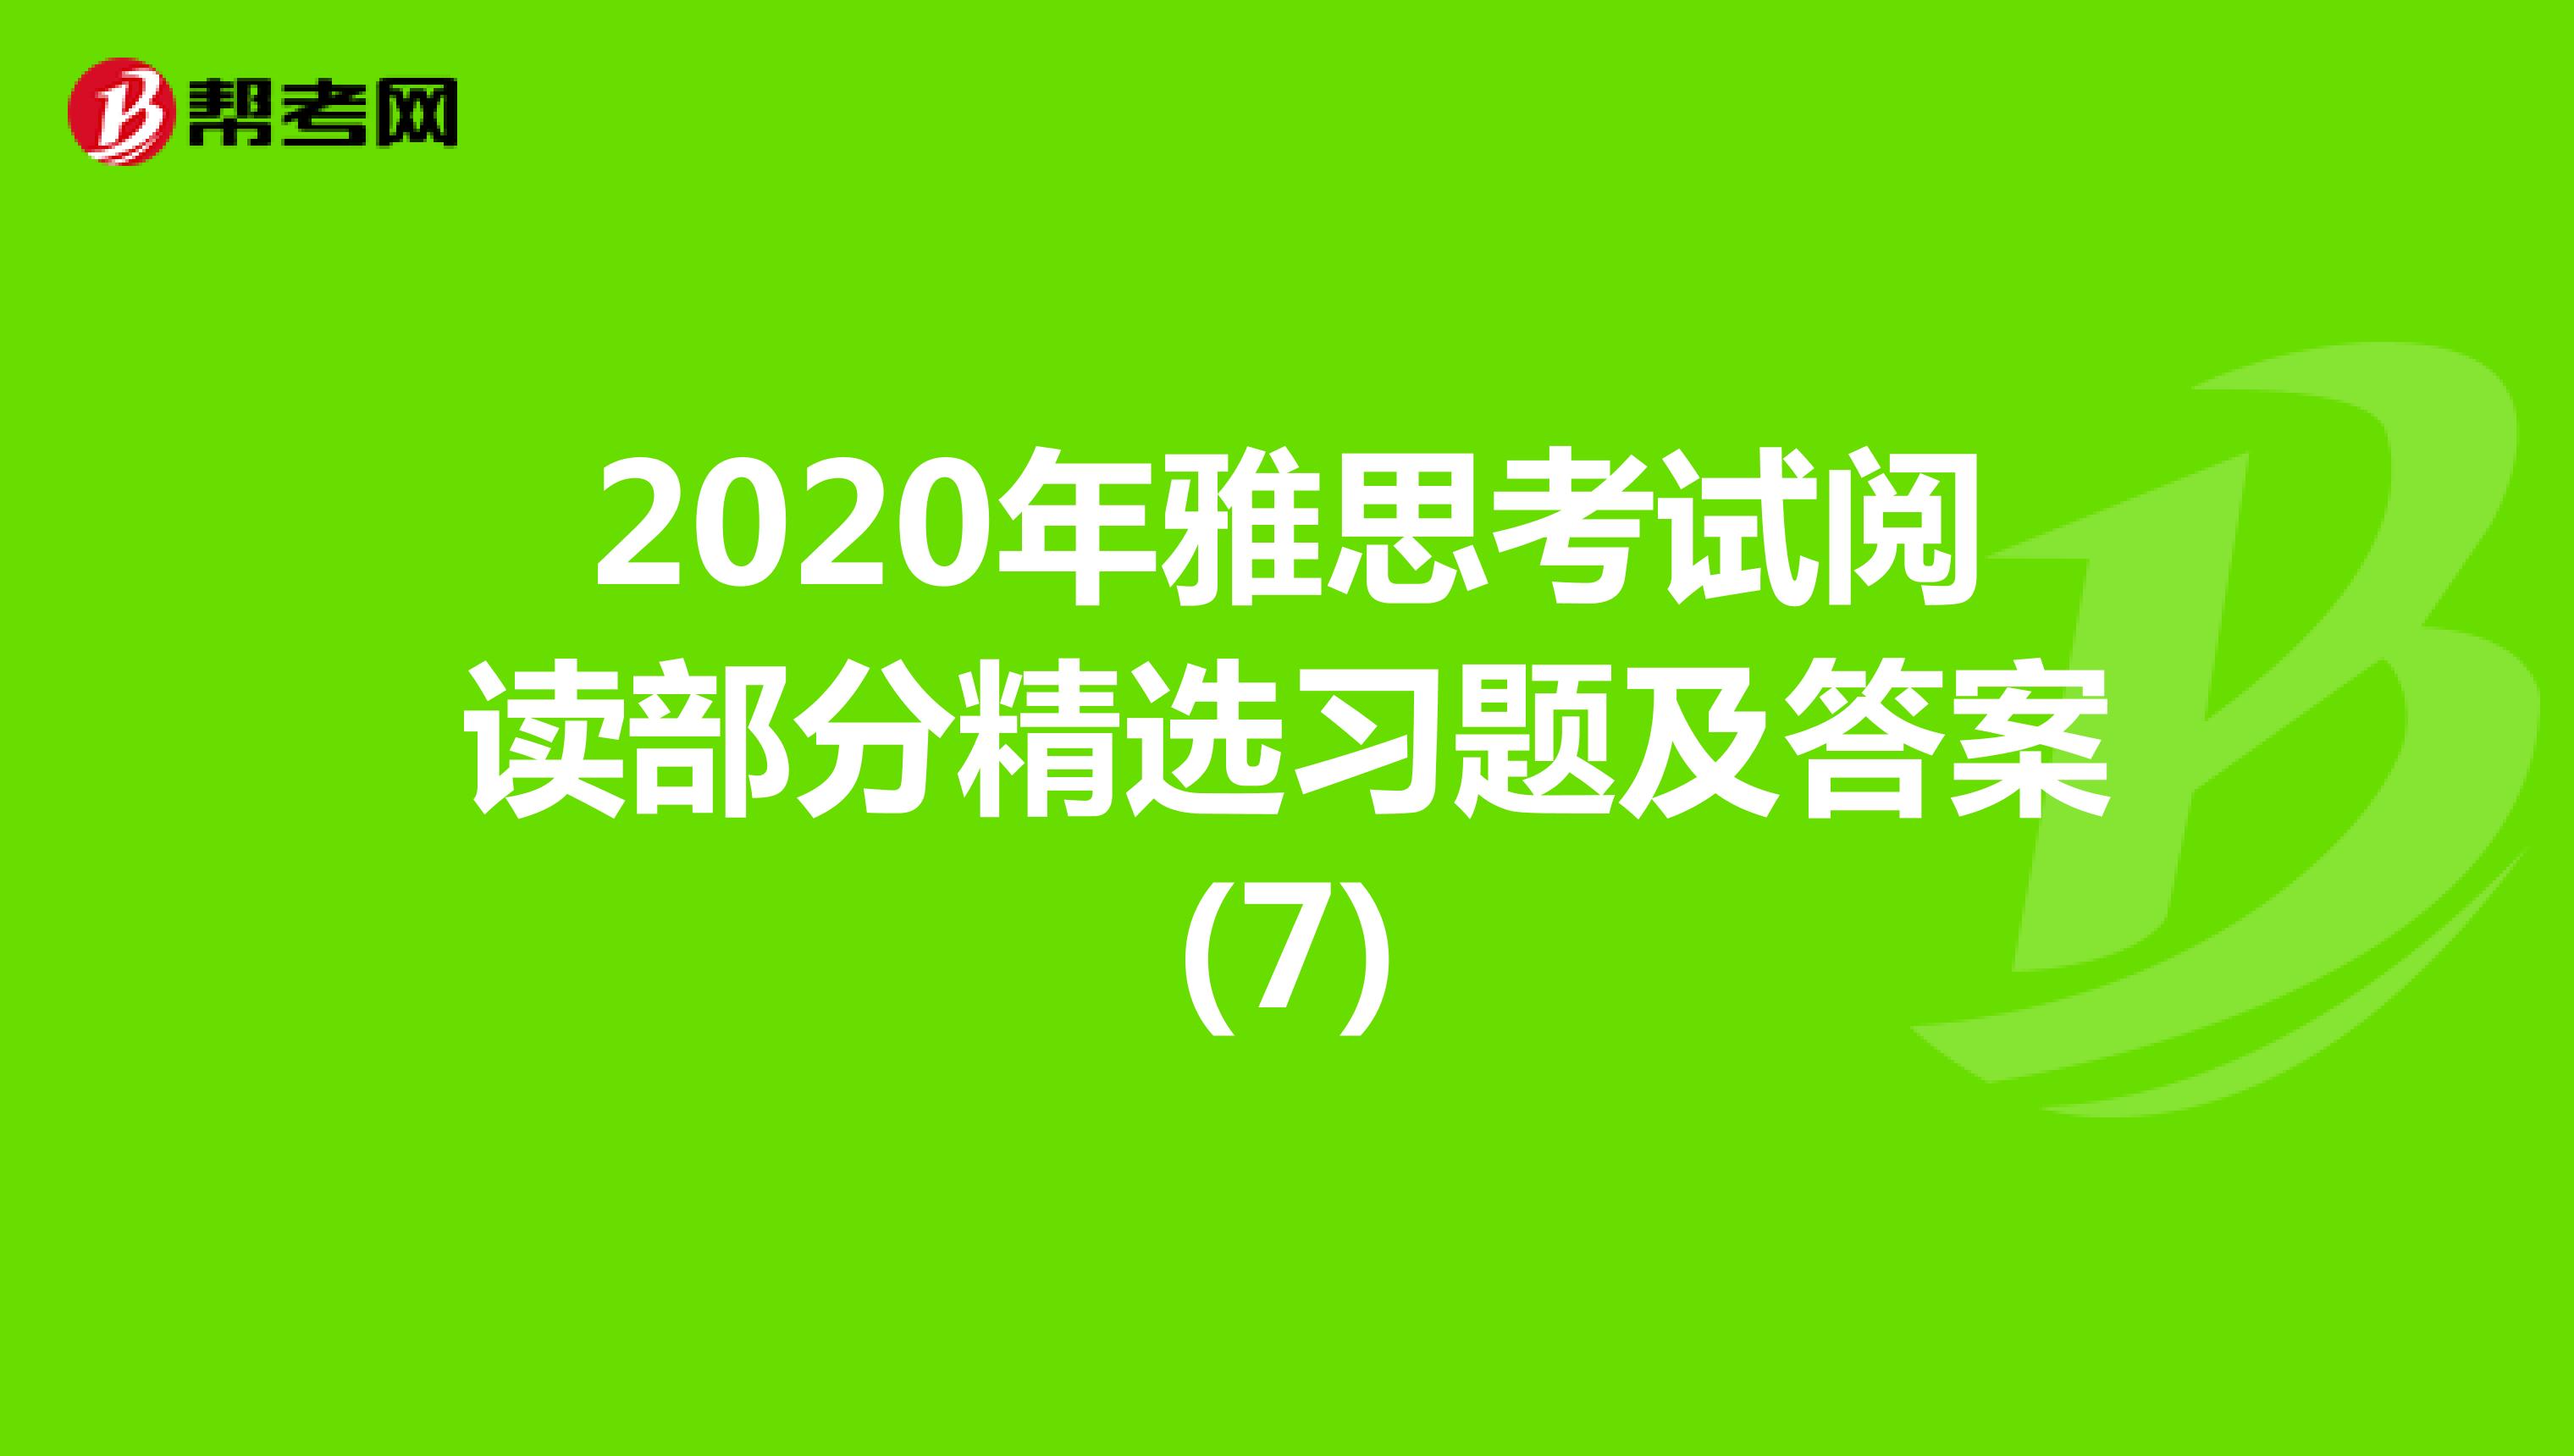 2020年雅思考试阅读部分精选习题及答案(7)